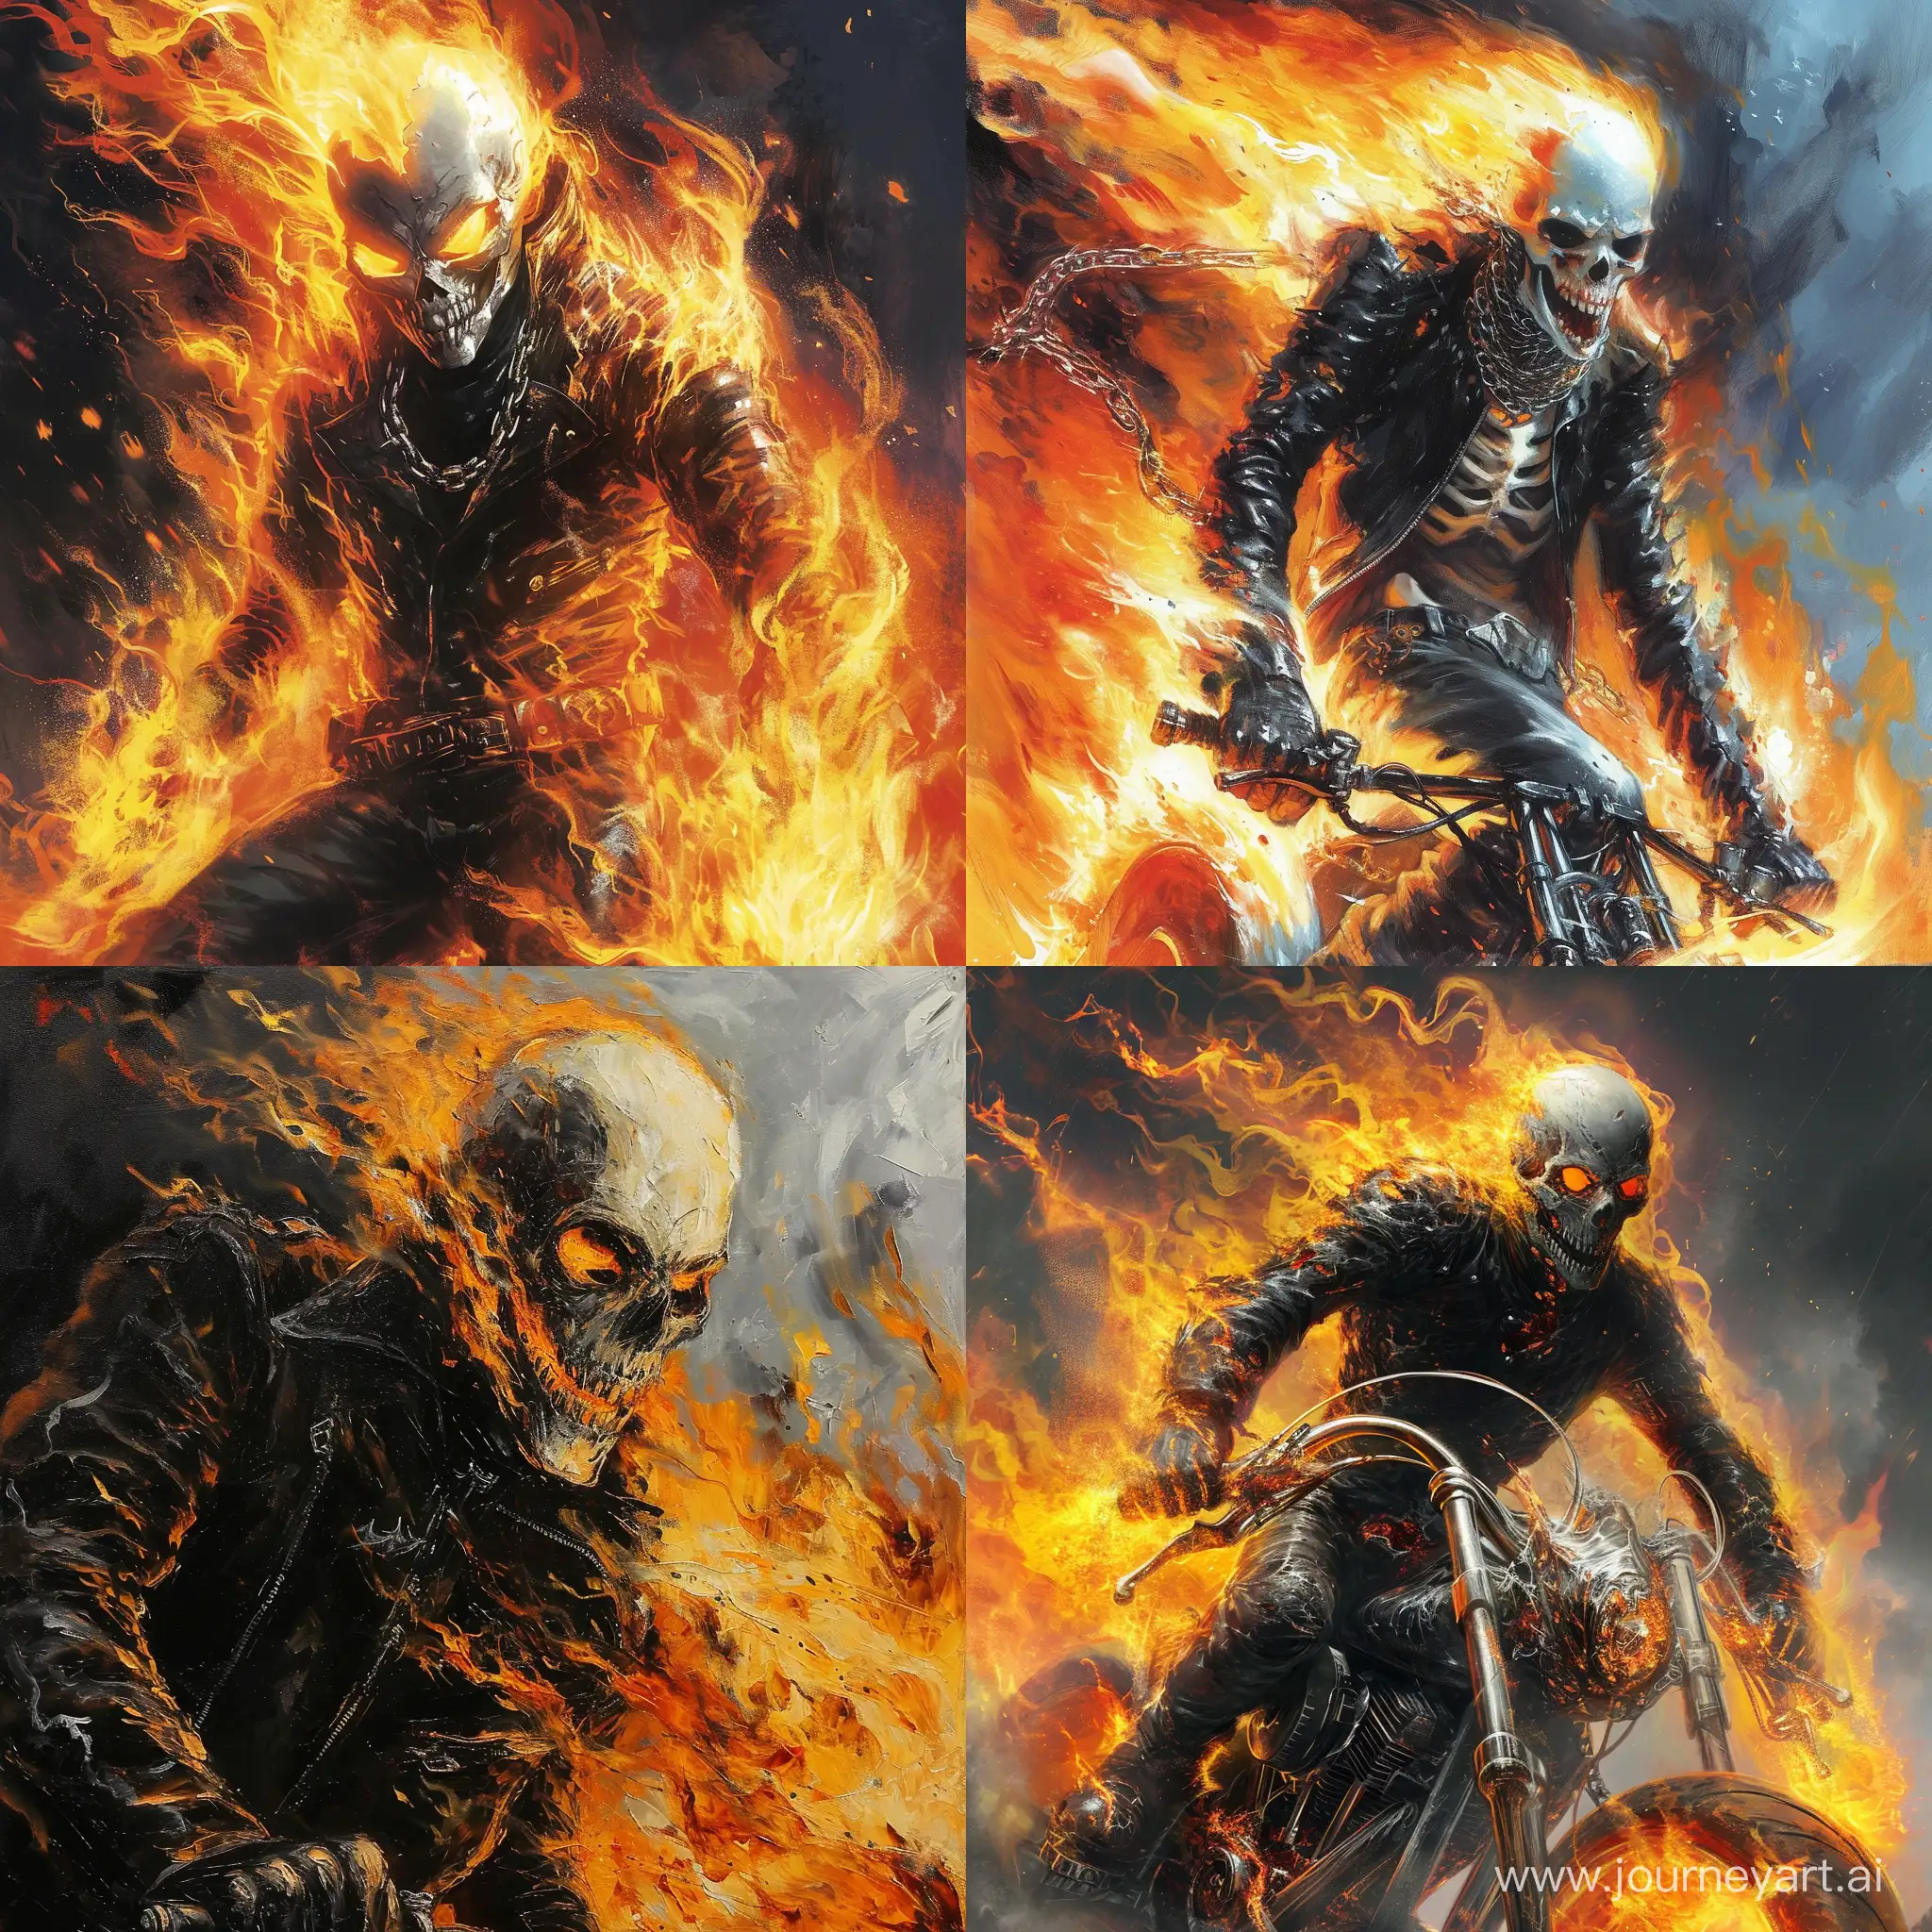 Epic-Ghost-Rider-Art-with-Fiery-Vortex